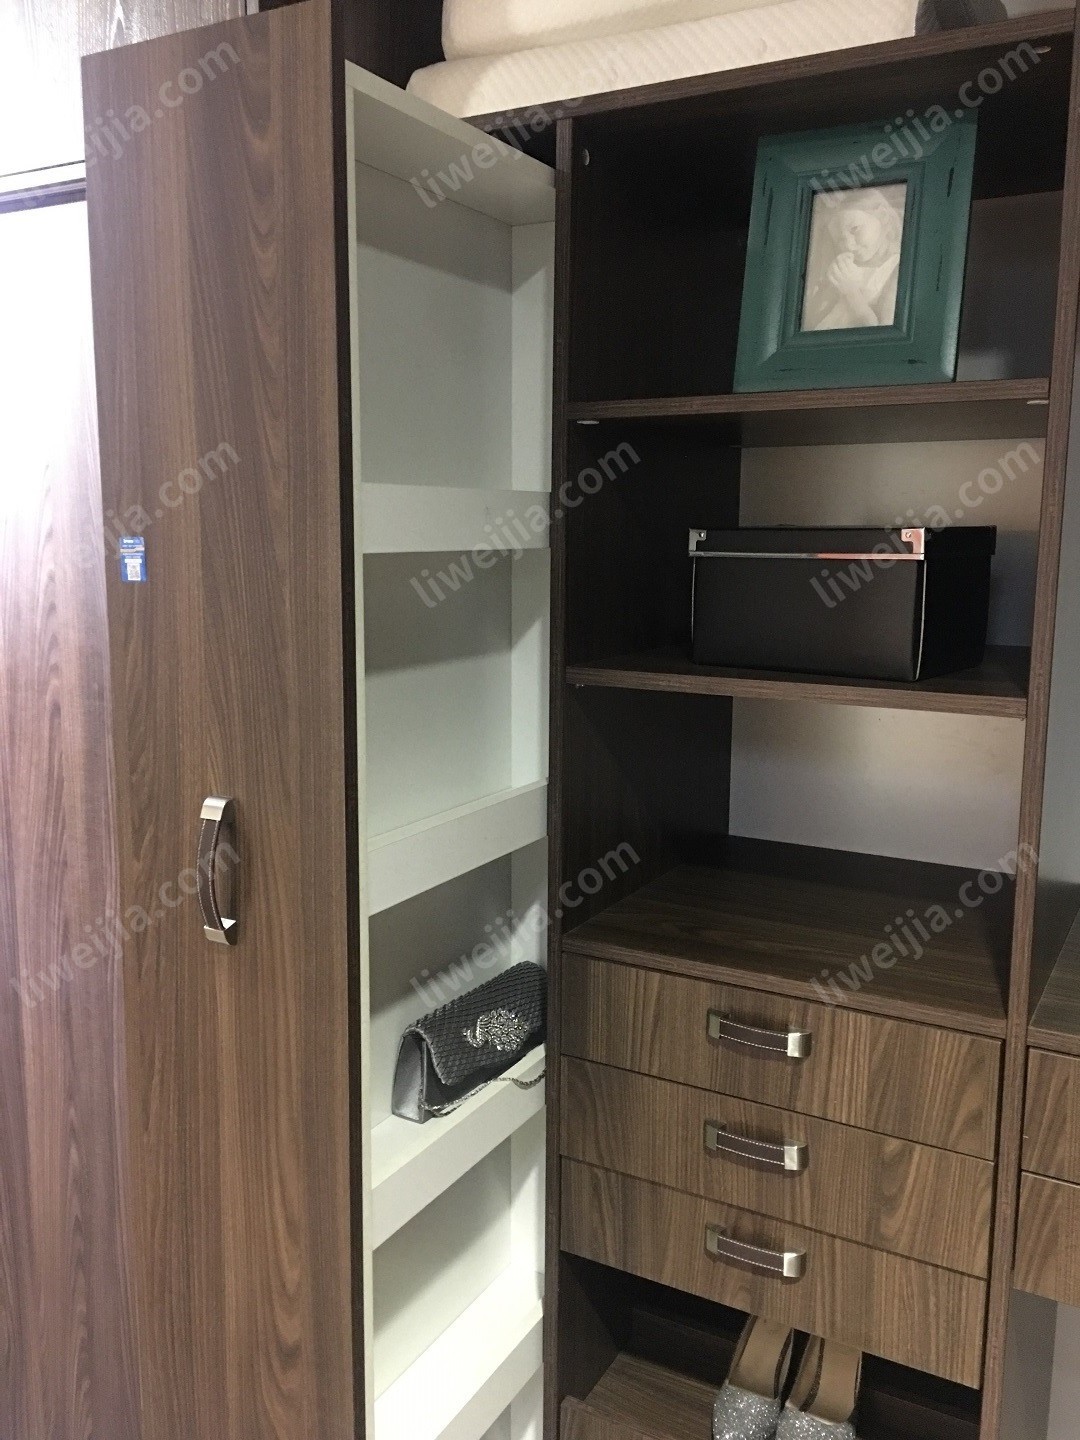 推拉窄柜通常应用于橱柜，它能有效节省空间并对收纳进行规划，因此丽维家将其引入到衣柜设计中。